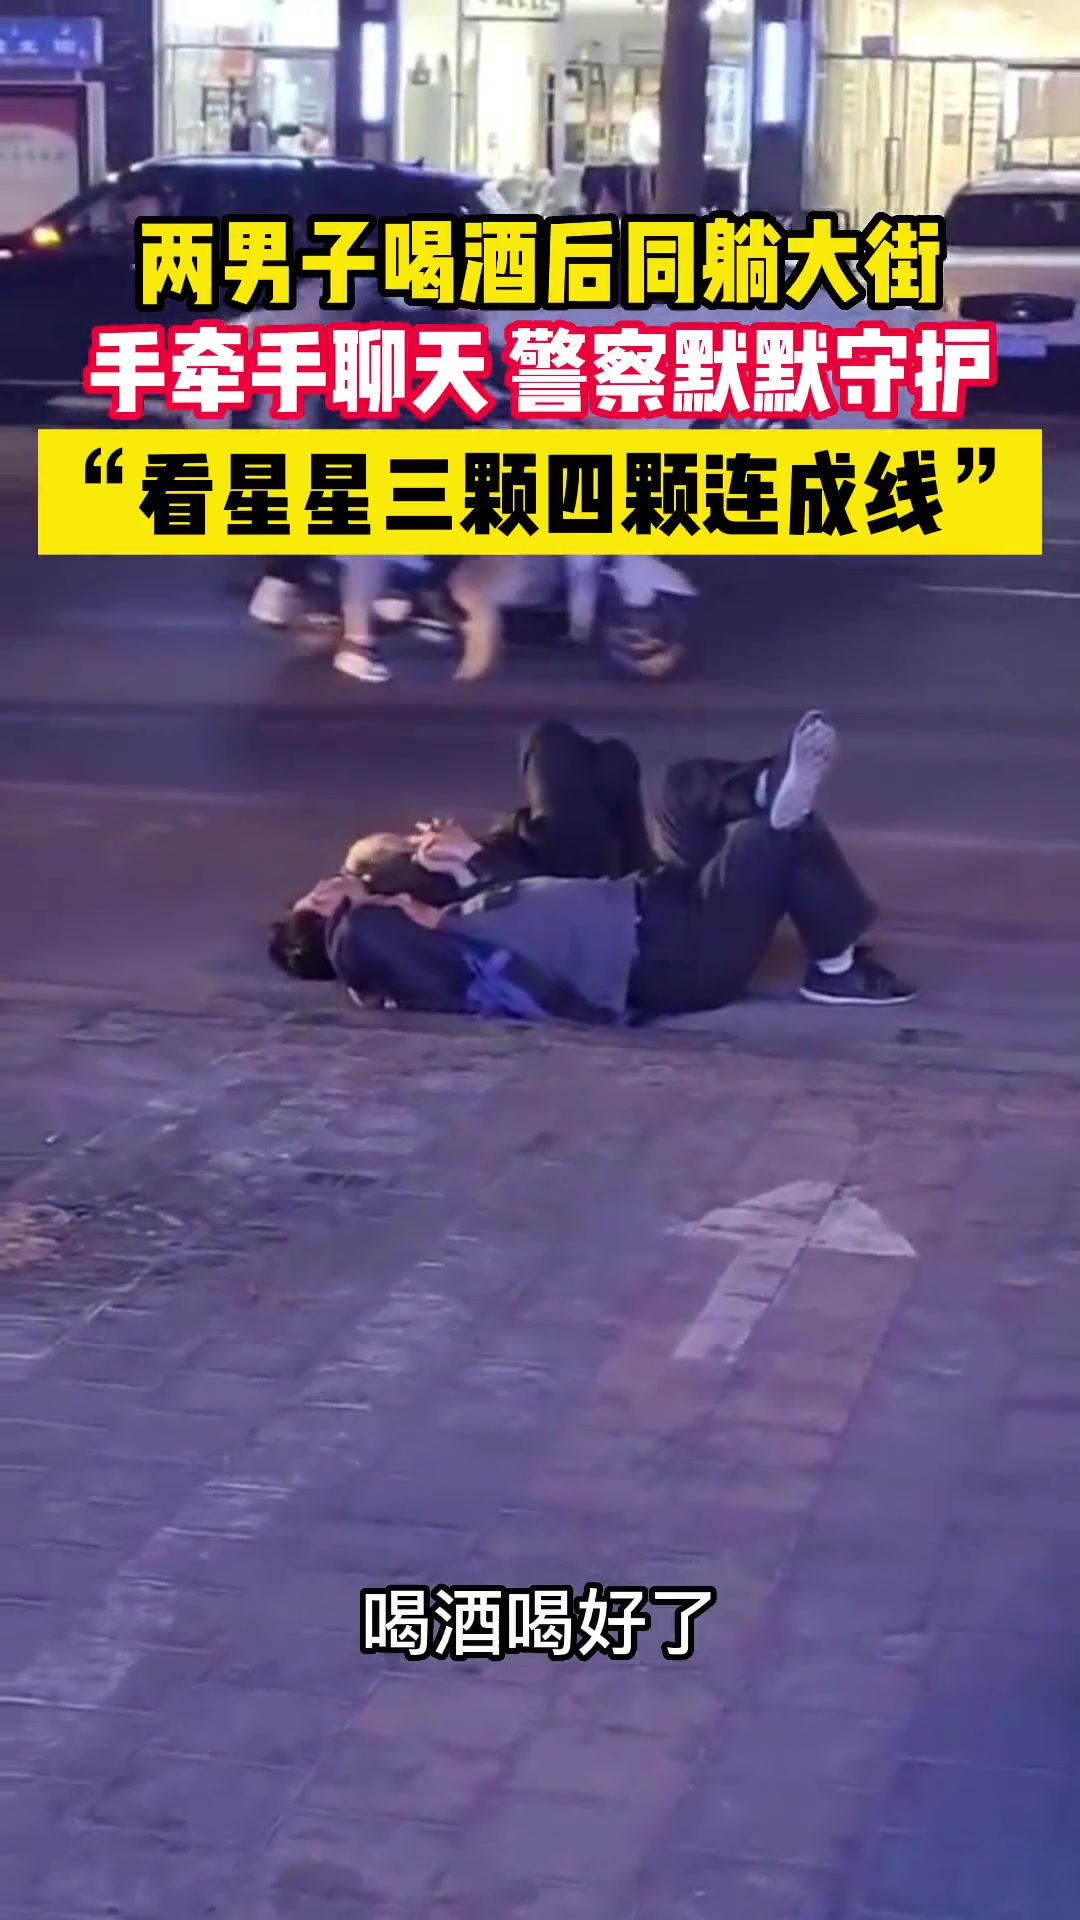 两男子喝酒后躺在街上手牵手聊天 警察在一旁默默守护